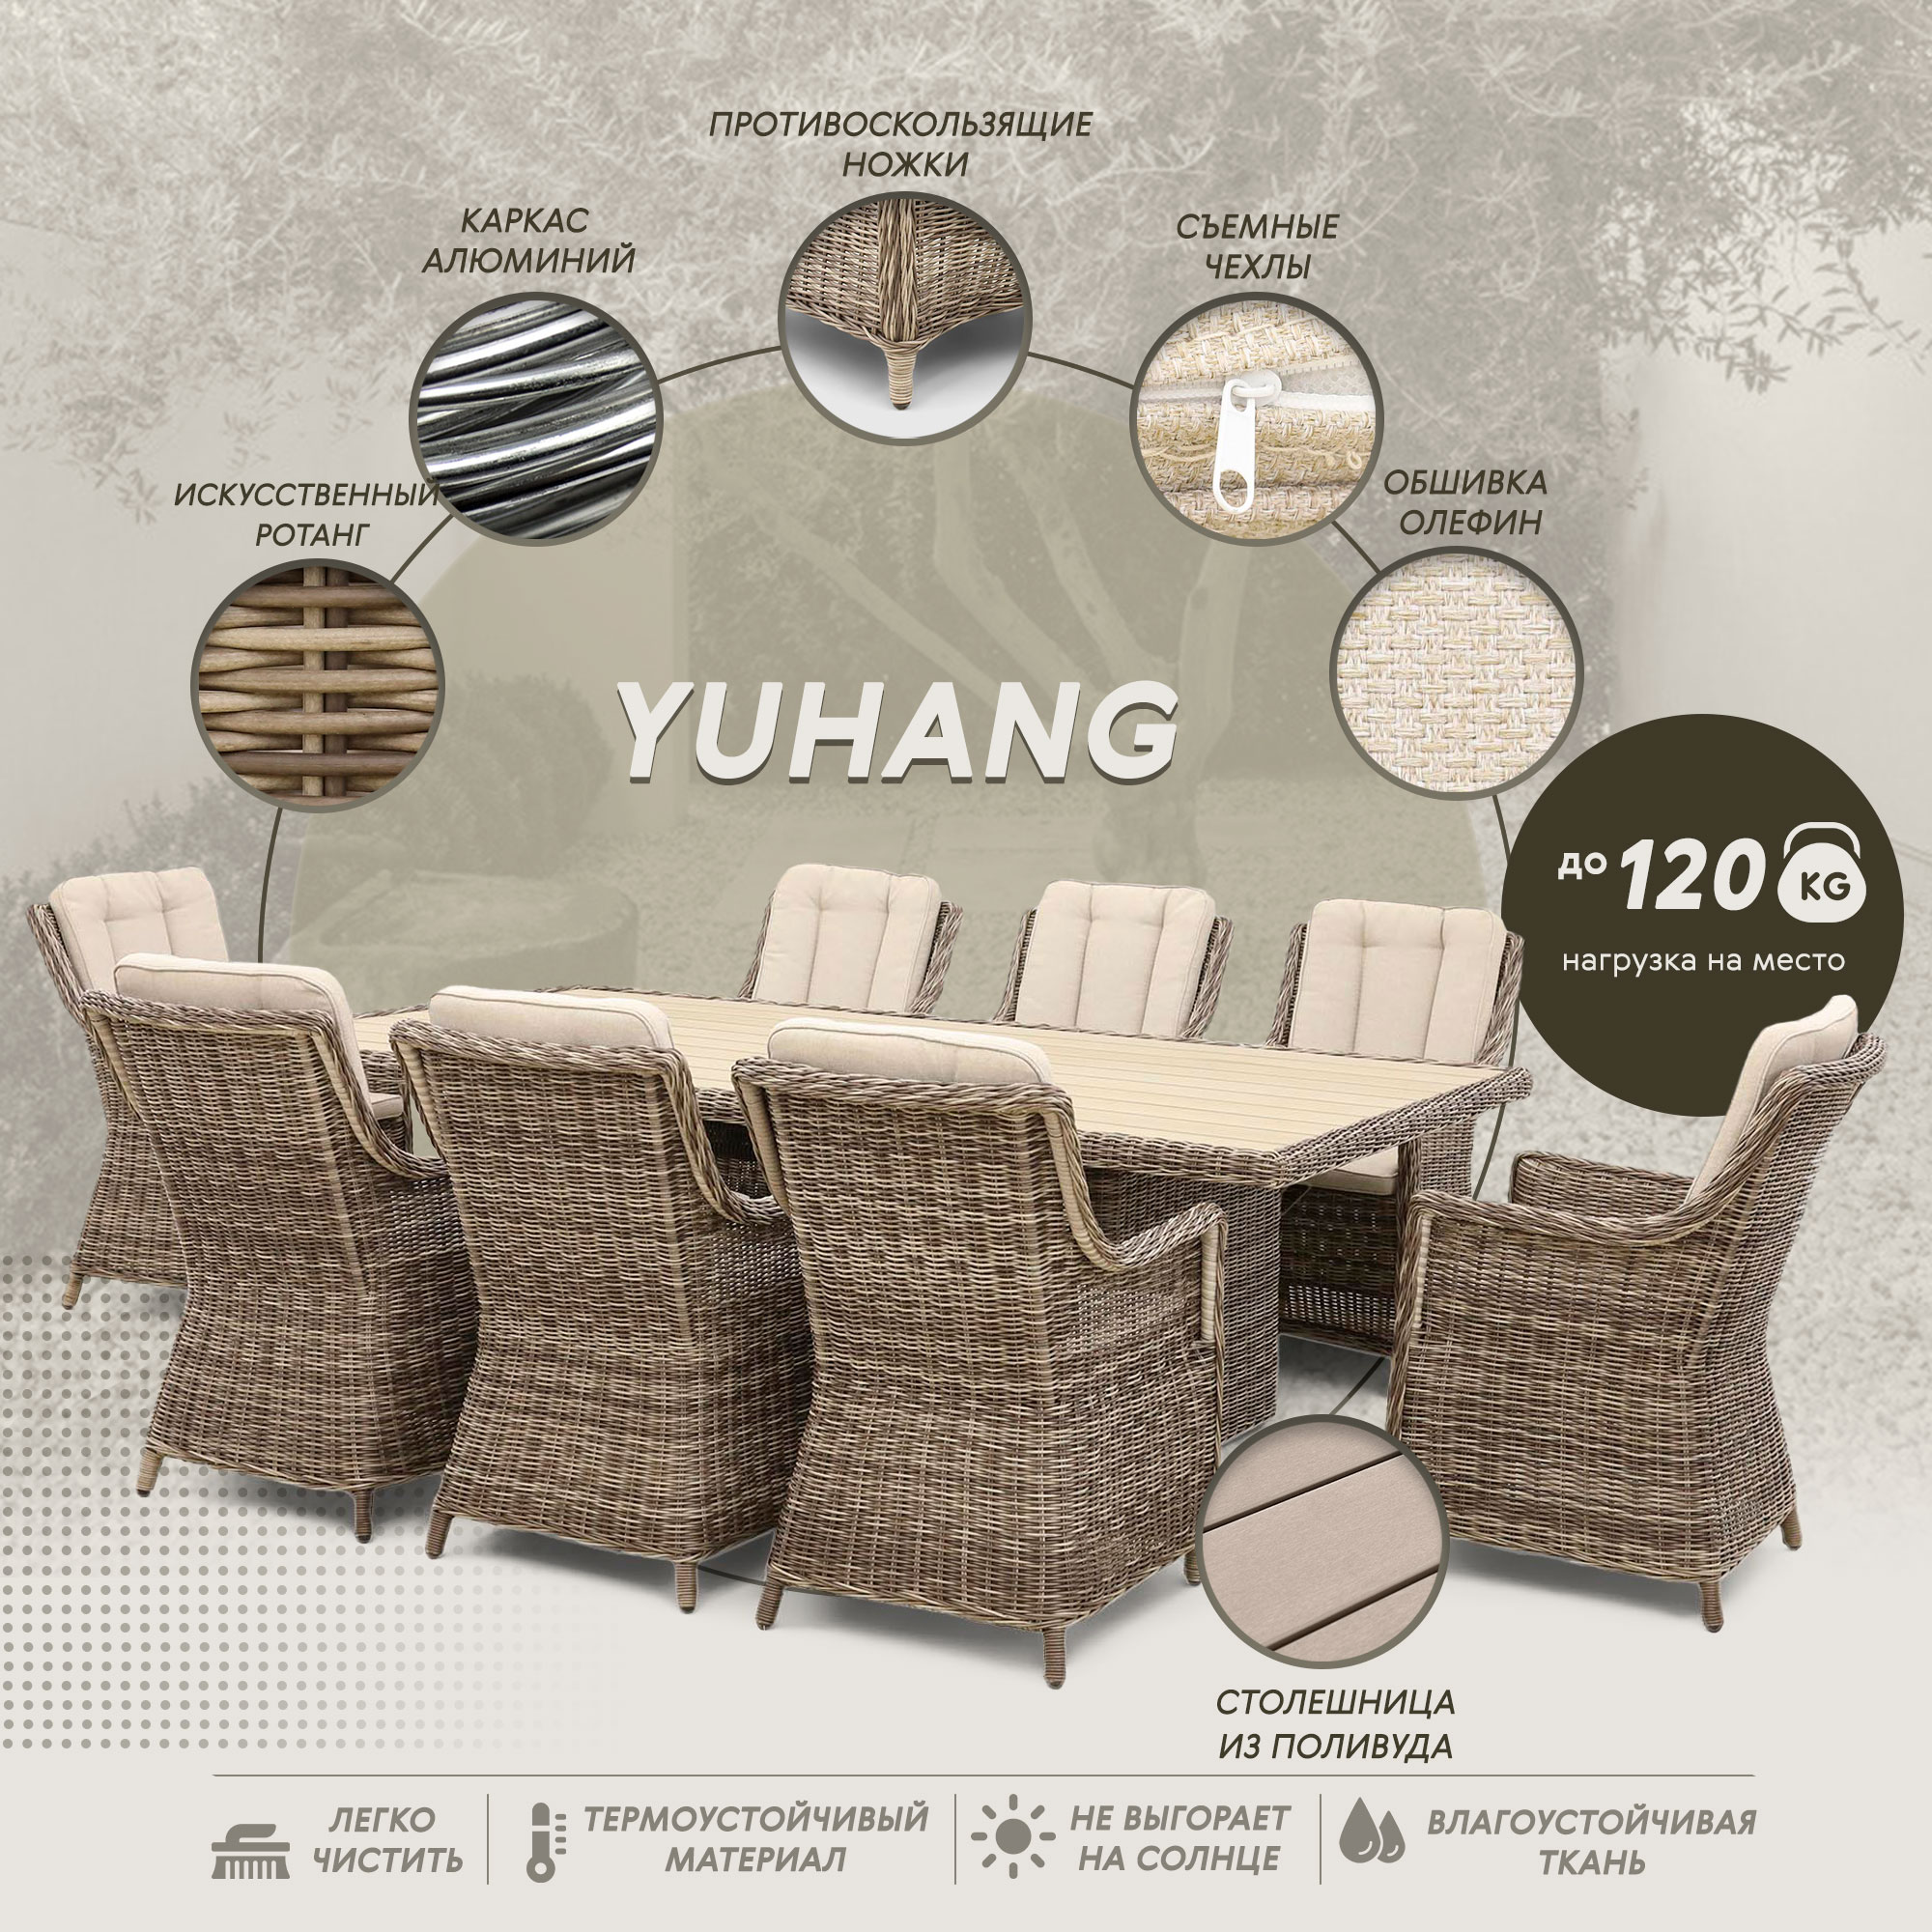 Комплект мебели Yuhang из искусственного ротанга 9 предметов, цвет бежевый, размер 60х72х93 - фото 3